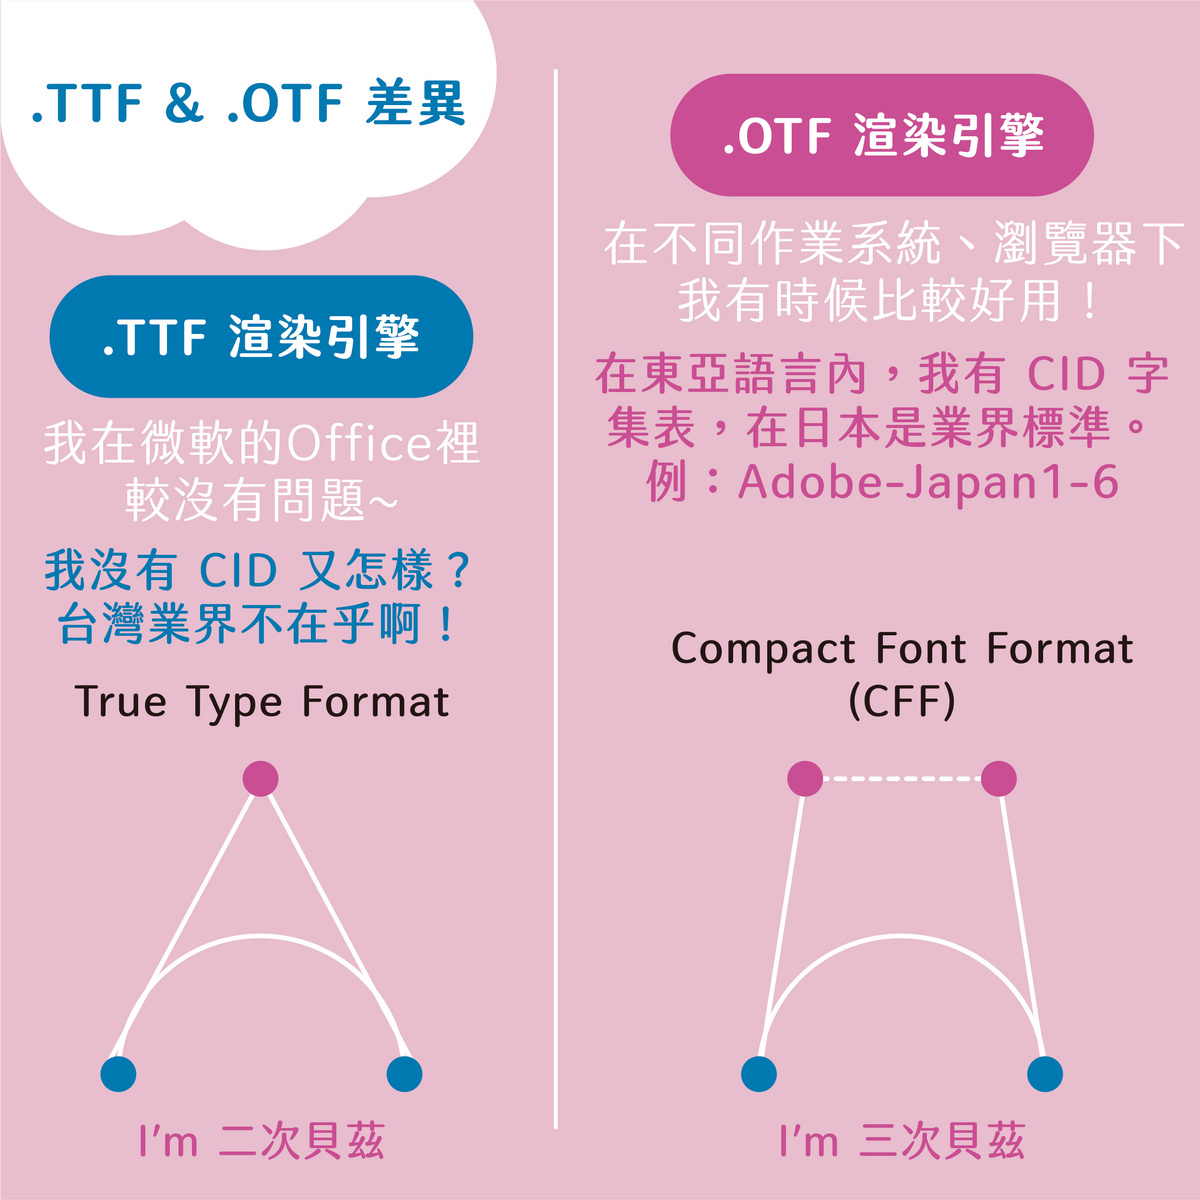 【三個常見字型】TTF. / OTF. / TTC. 副檔名的差異－.TTF&.OTF的差異